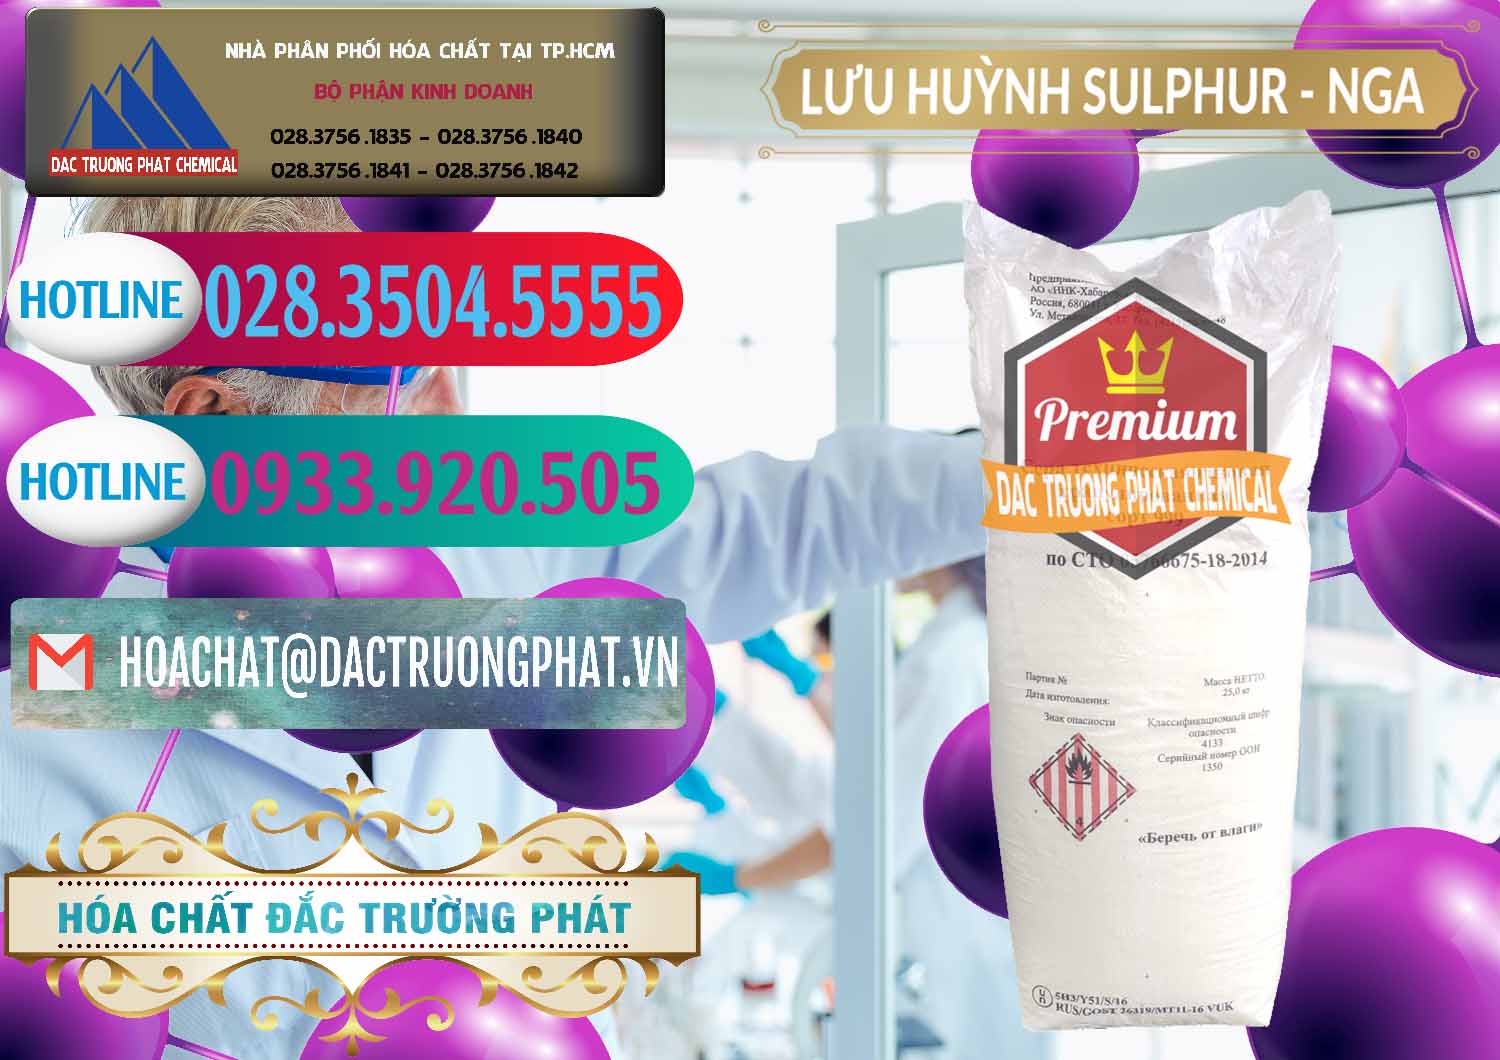 Cung cấp và bán Lưu huỳnh Hạt - Sulfur Nga Russia - 0200 - Cty chuyên cung cấp - nhập khẩu hóa chất tại TP.HCM - truongphat.vn